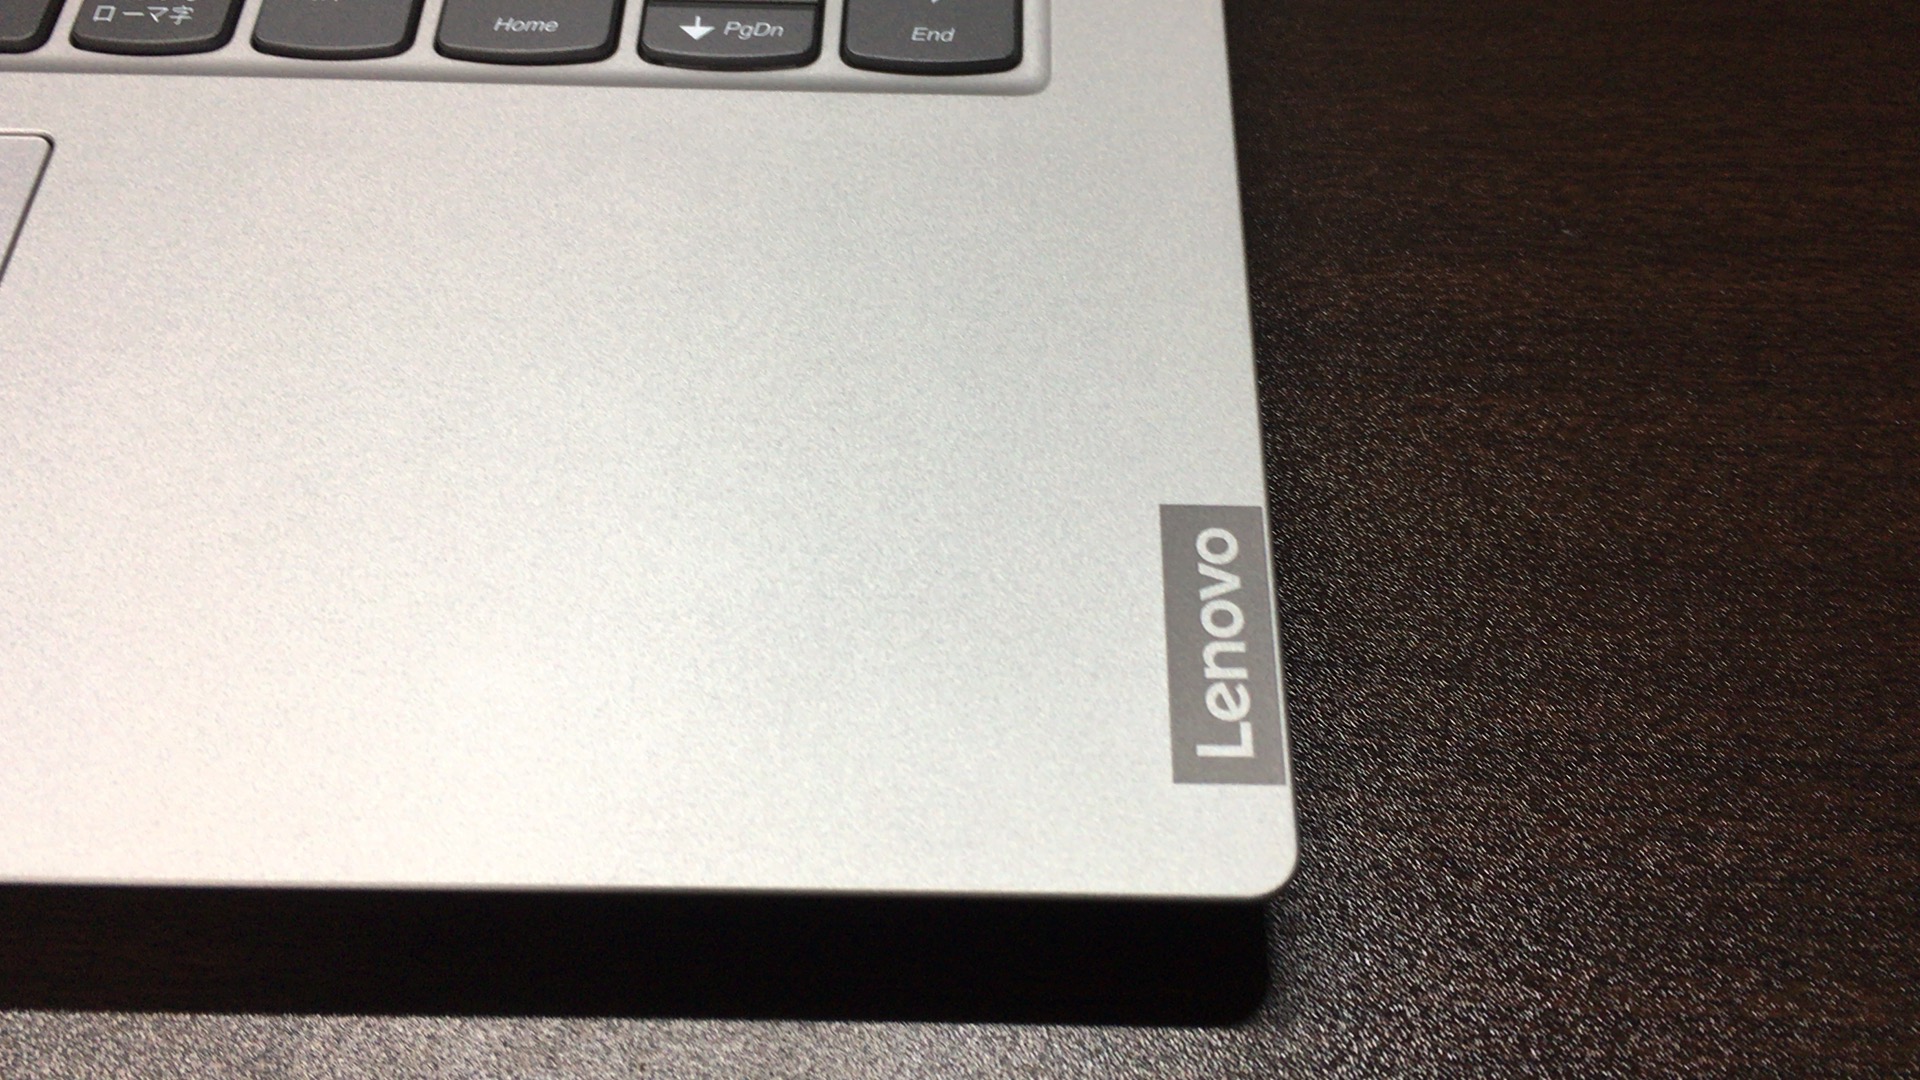 パソコンを新調してみた Lenovo Ideapad S340 プラチナグレー かわろぐ